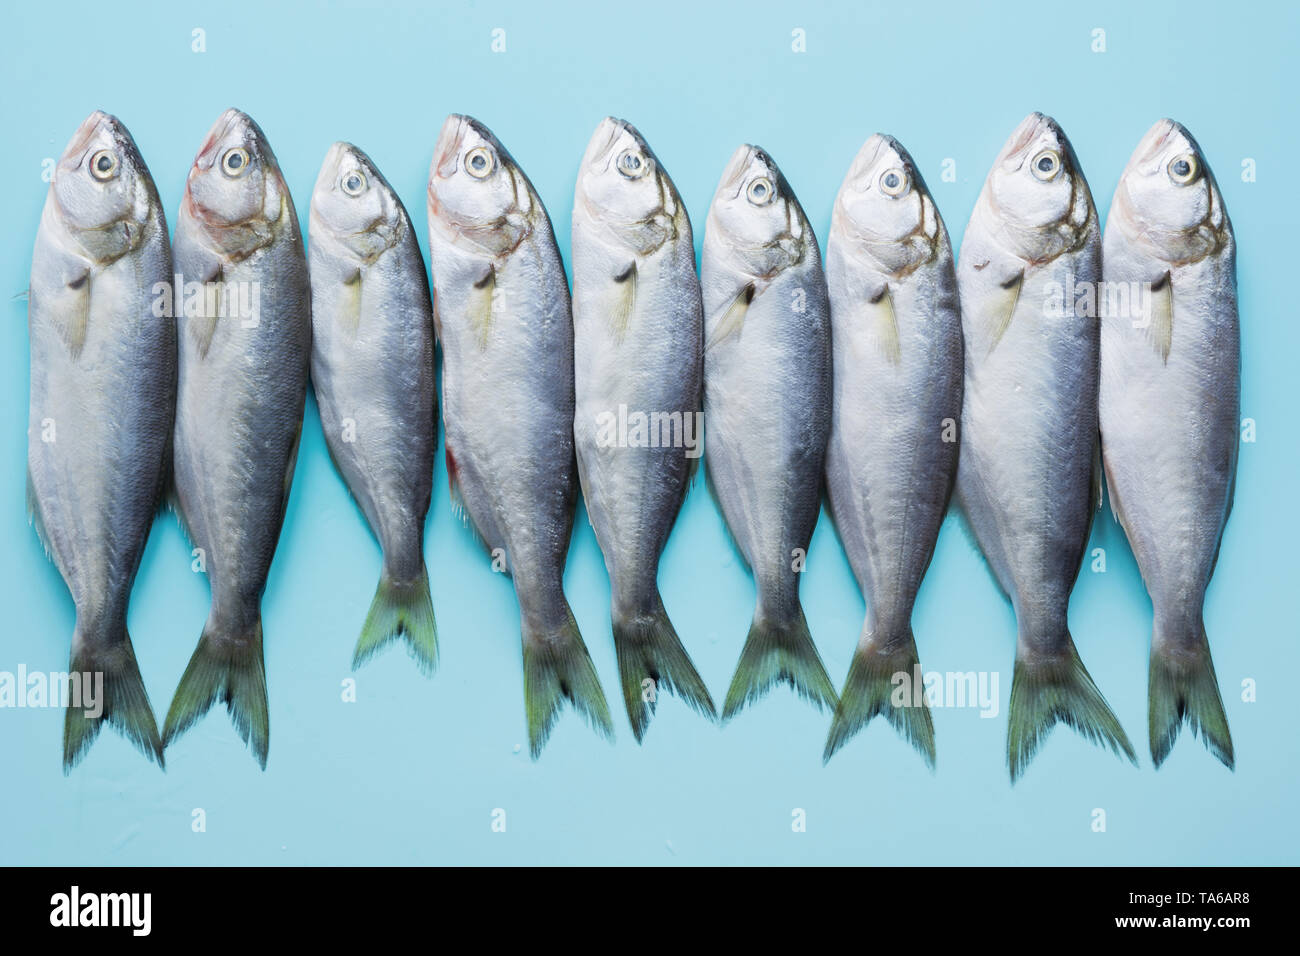 Schwarzes Meer Bluefish auf der - Schule Fische Alamy mit Stockfotografie Fisch blauem Text. Hintergrund. oben. Platz Blick für Muster von